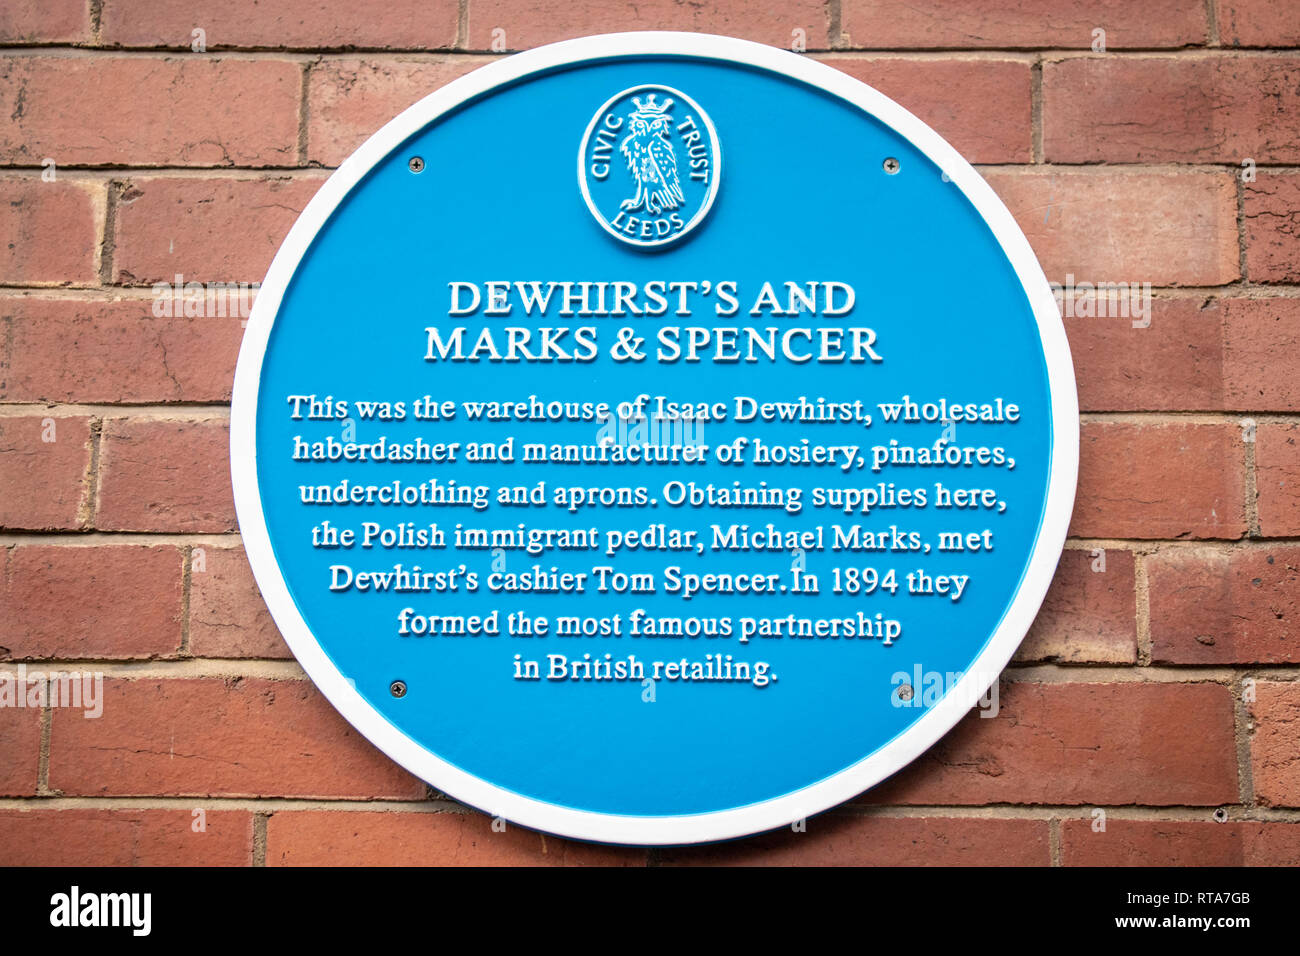 Le blue plaque à Leeds, Yorkshire UK marquant le site d'Isaac Dewhirsts entrepôt où Michael Marks a rencontré Tom Spencer Banque D'Images